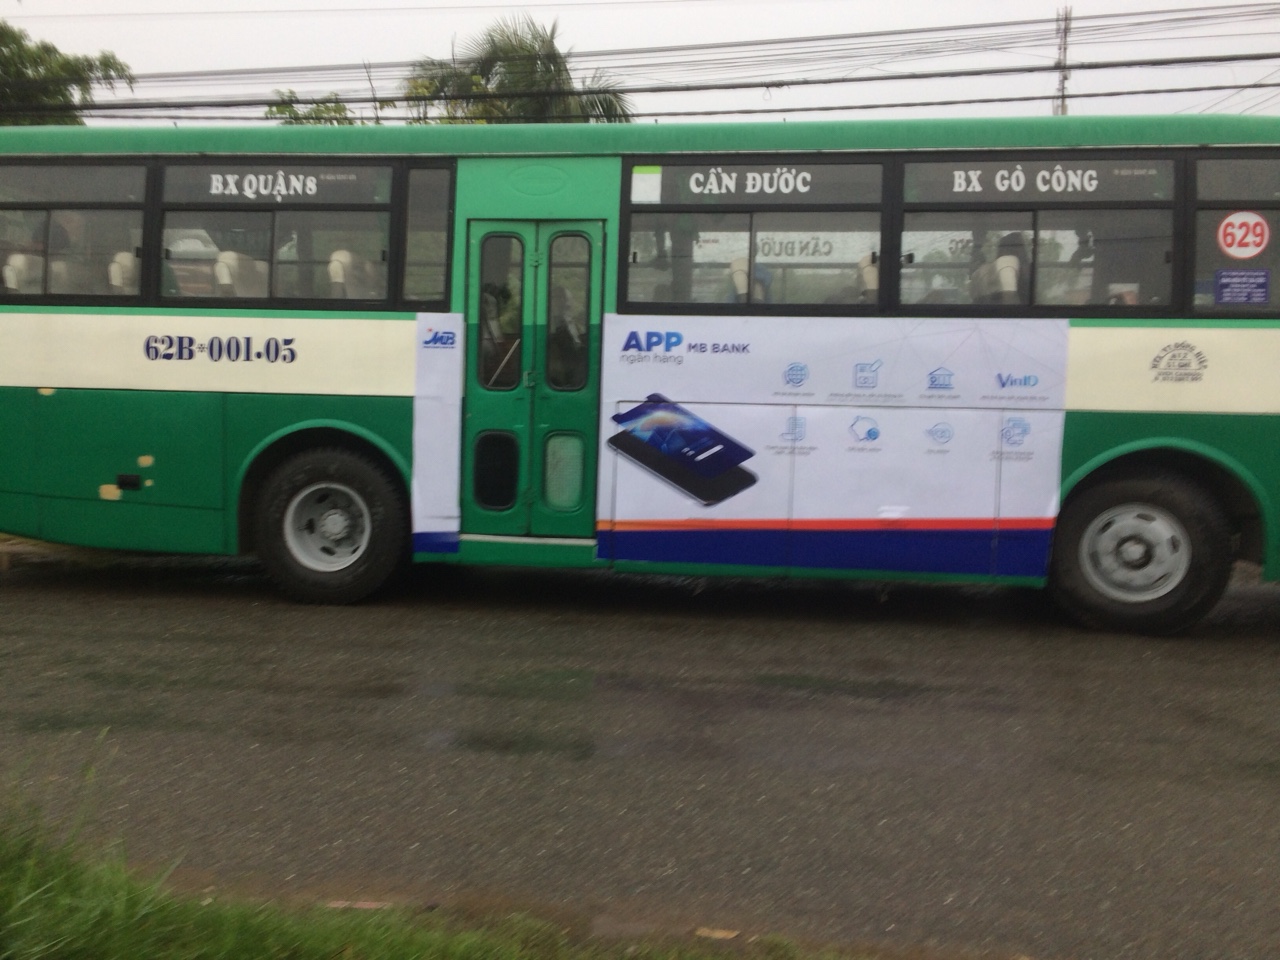 Quảng cáo xe bus tuyến 629 - Xe bus Hồ Chí Minh